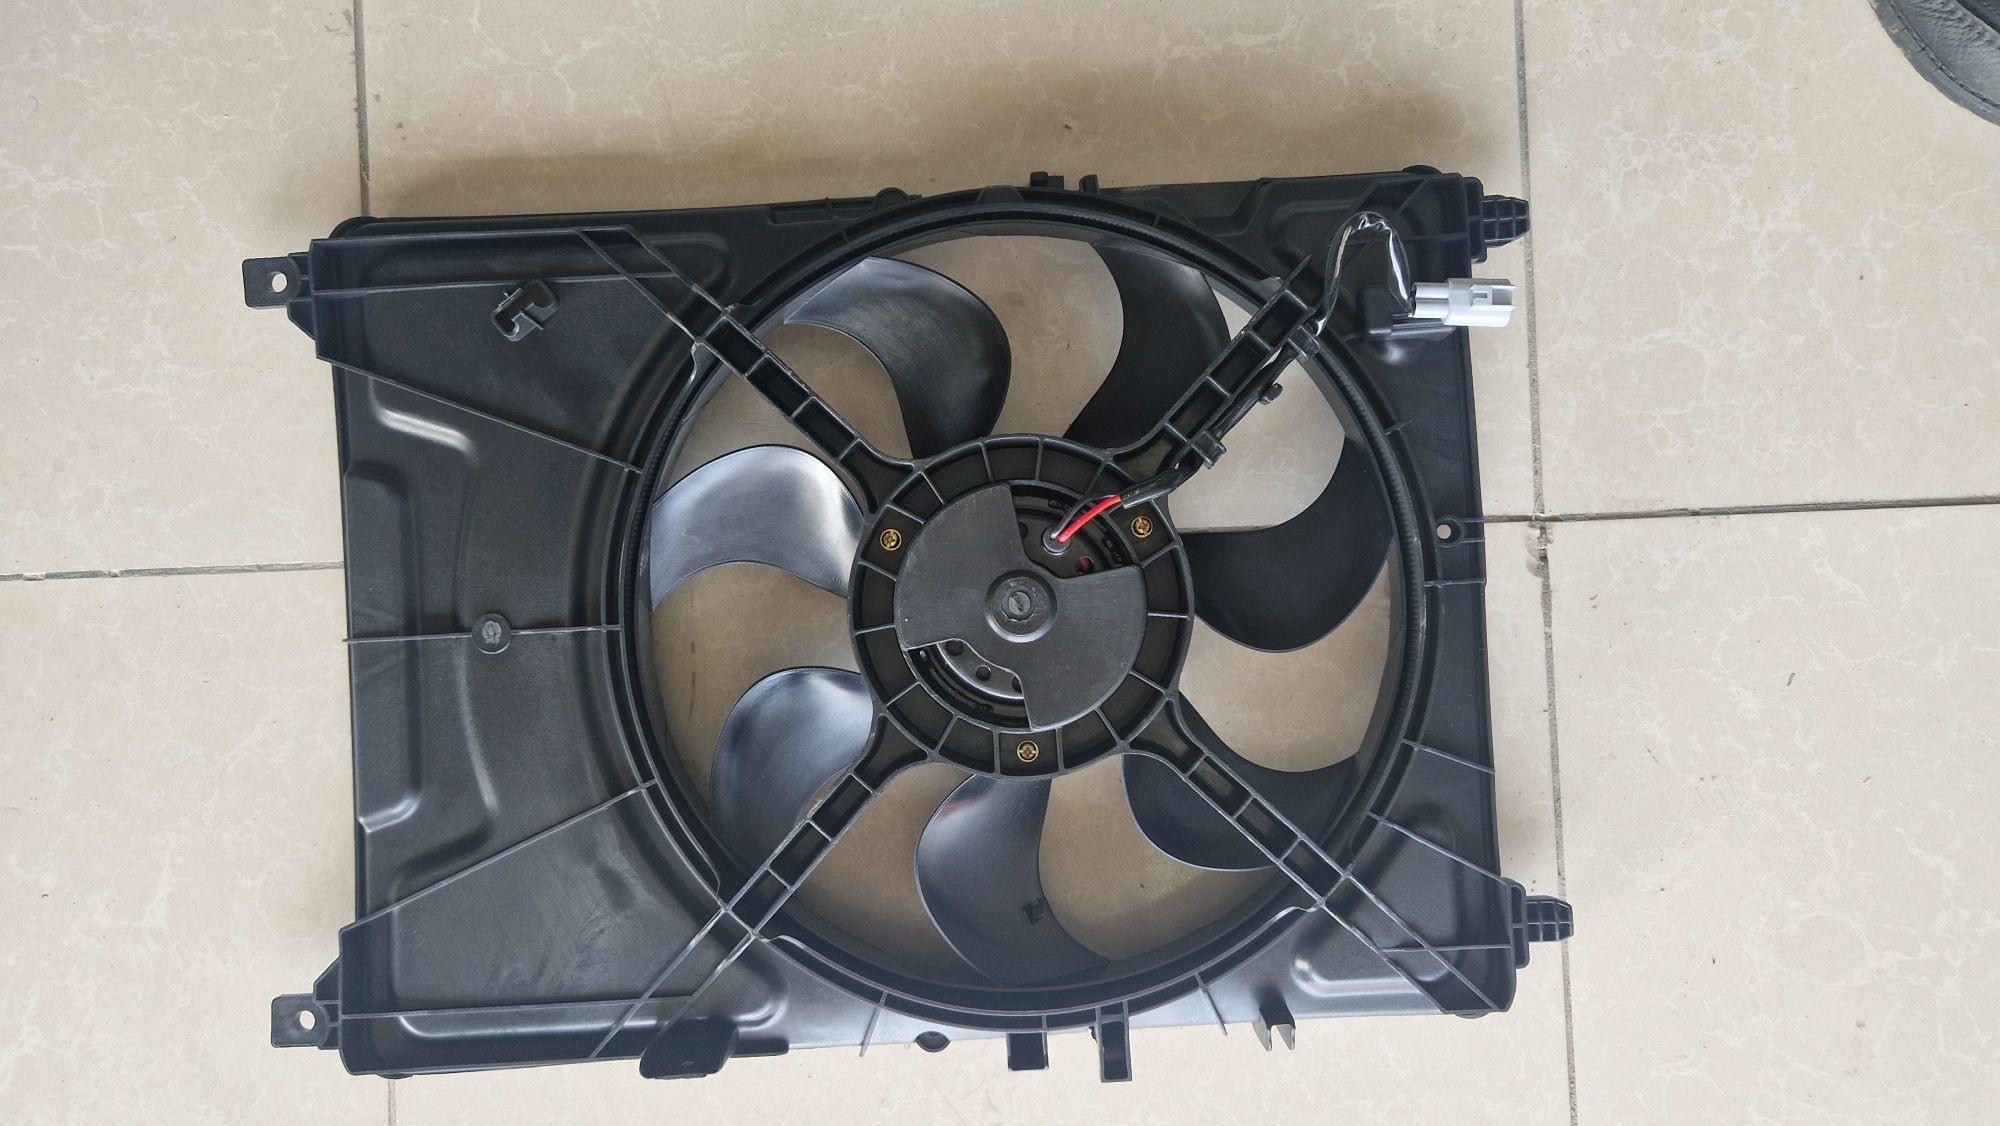 Вентилятор охлаждения Равон Р3 Шевроле Нексия 1.5 двигателя, Nexia R3